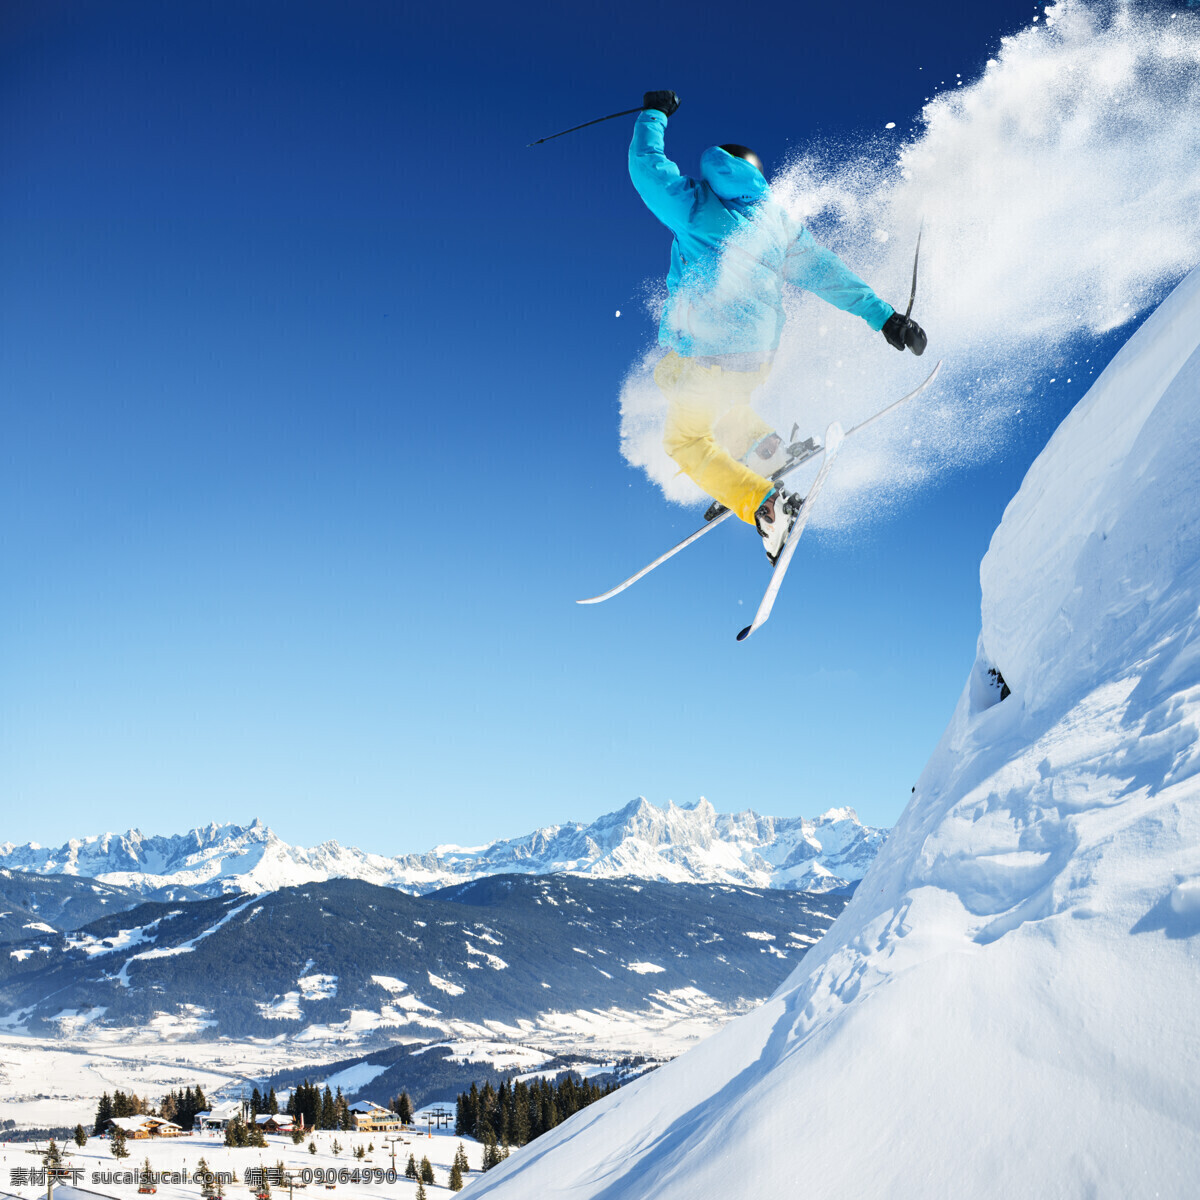 腾空 跳跃 滑雪 运动员 雪地运动 划雪运动 极限运动 体育项目 其他类别 生活百科 蓝色